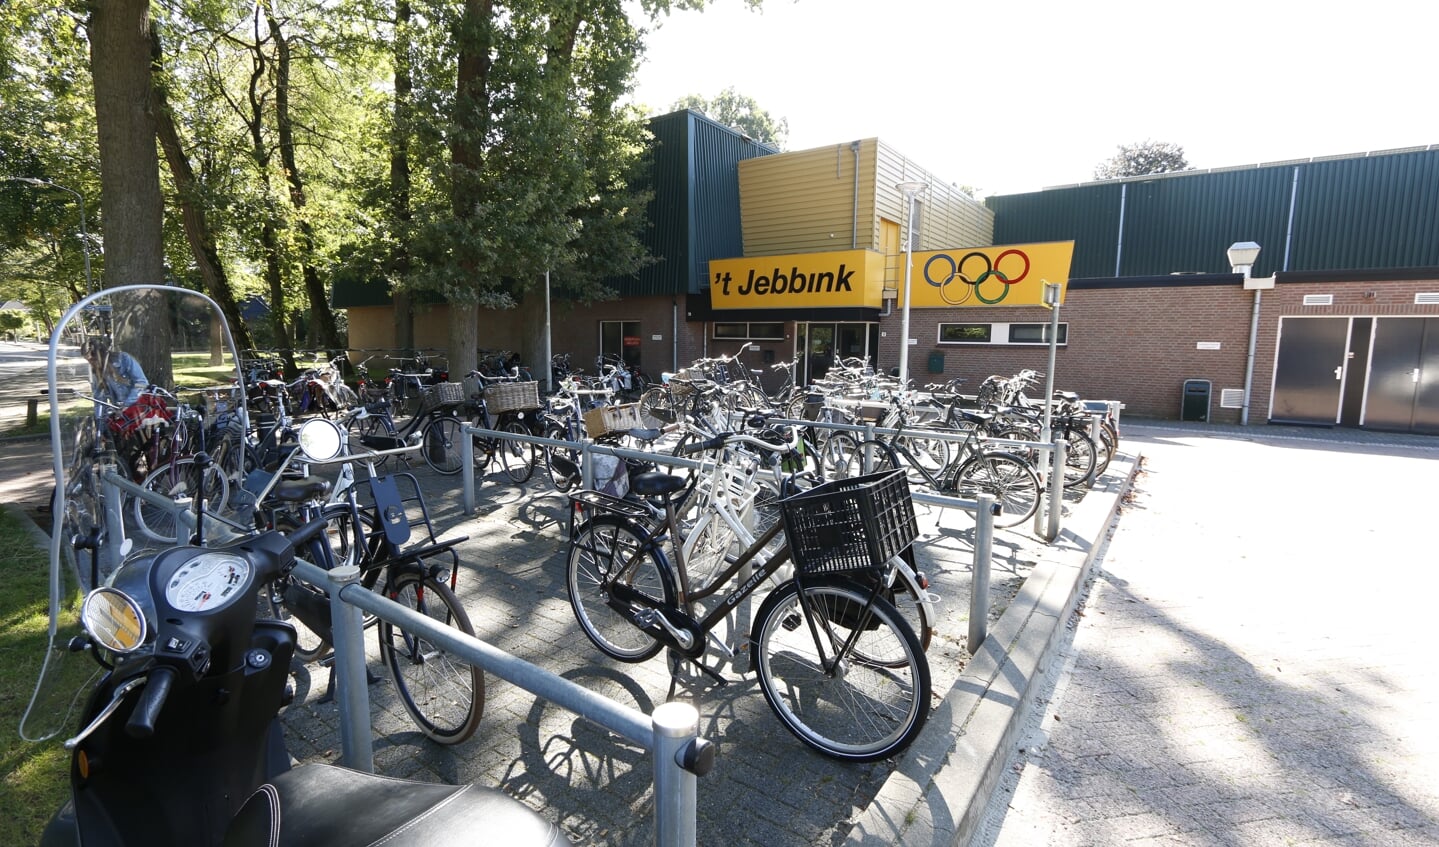 Sporthal ’t Jebbink aan Het Jebbink in Vorden. Foto: Gerhard Weevers